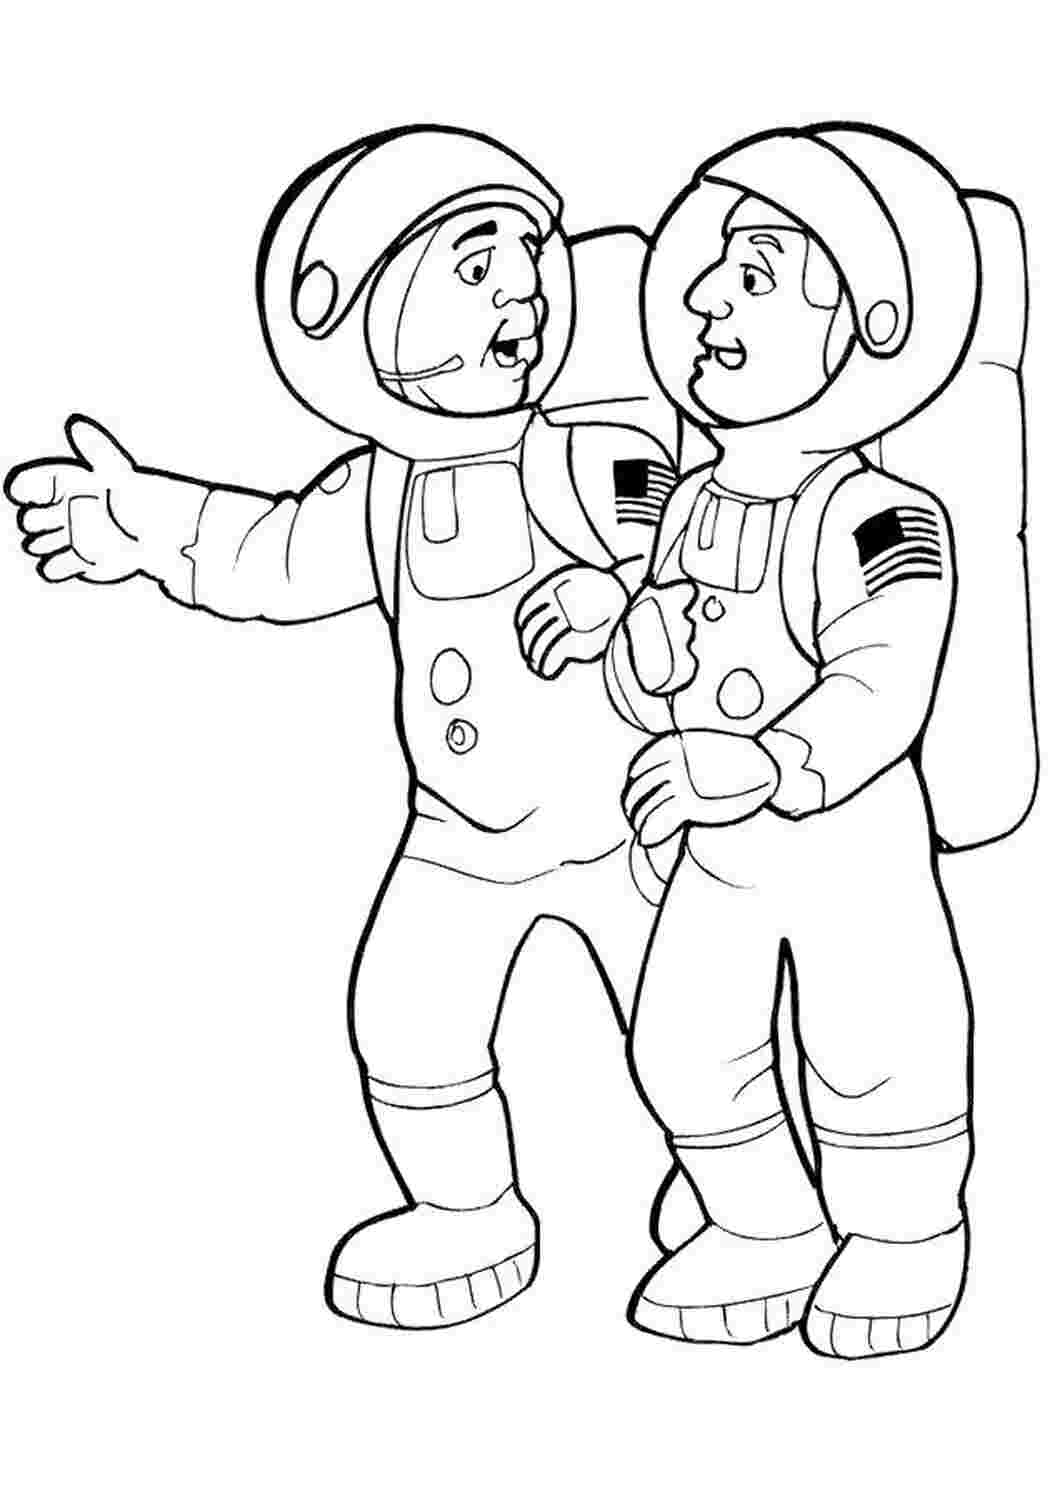 Раскраски картинки на рабочий стол онлайн Два космонавта Распечатать раскраски для мальчиков